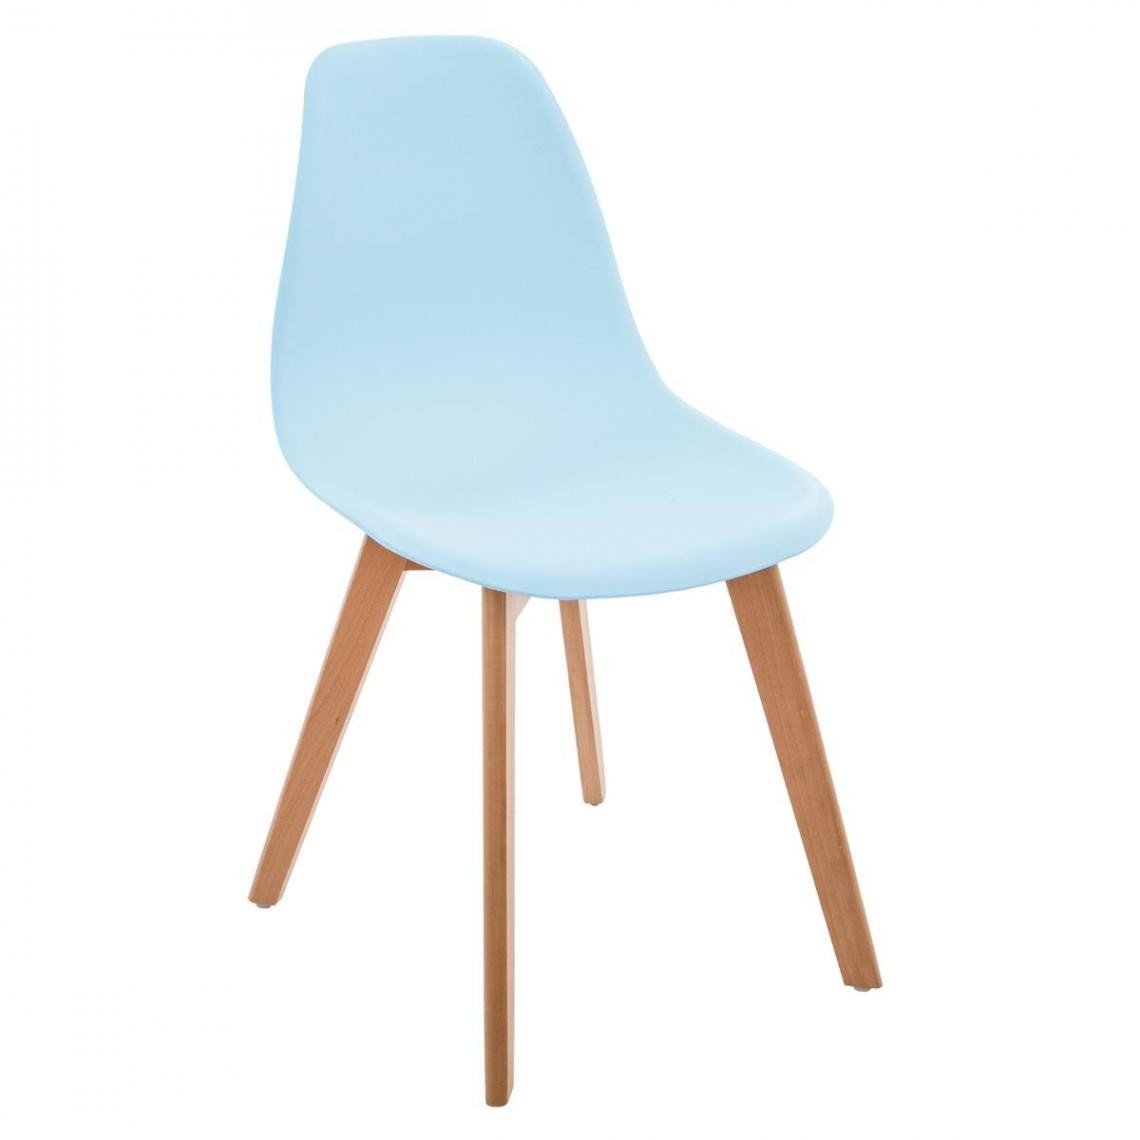 Pegane - Lot de 4 chaises pour enfant en Polypropylène bleu - 58 x 34 x 30 cm - Chaises